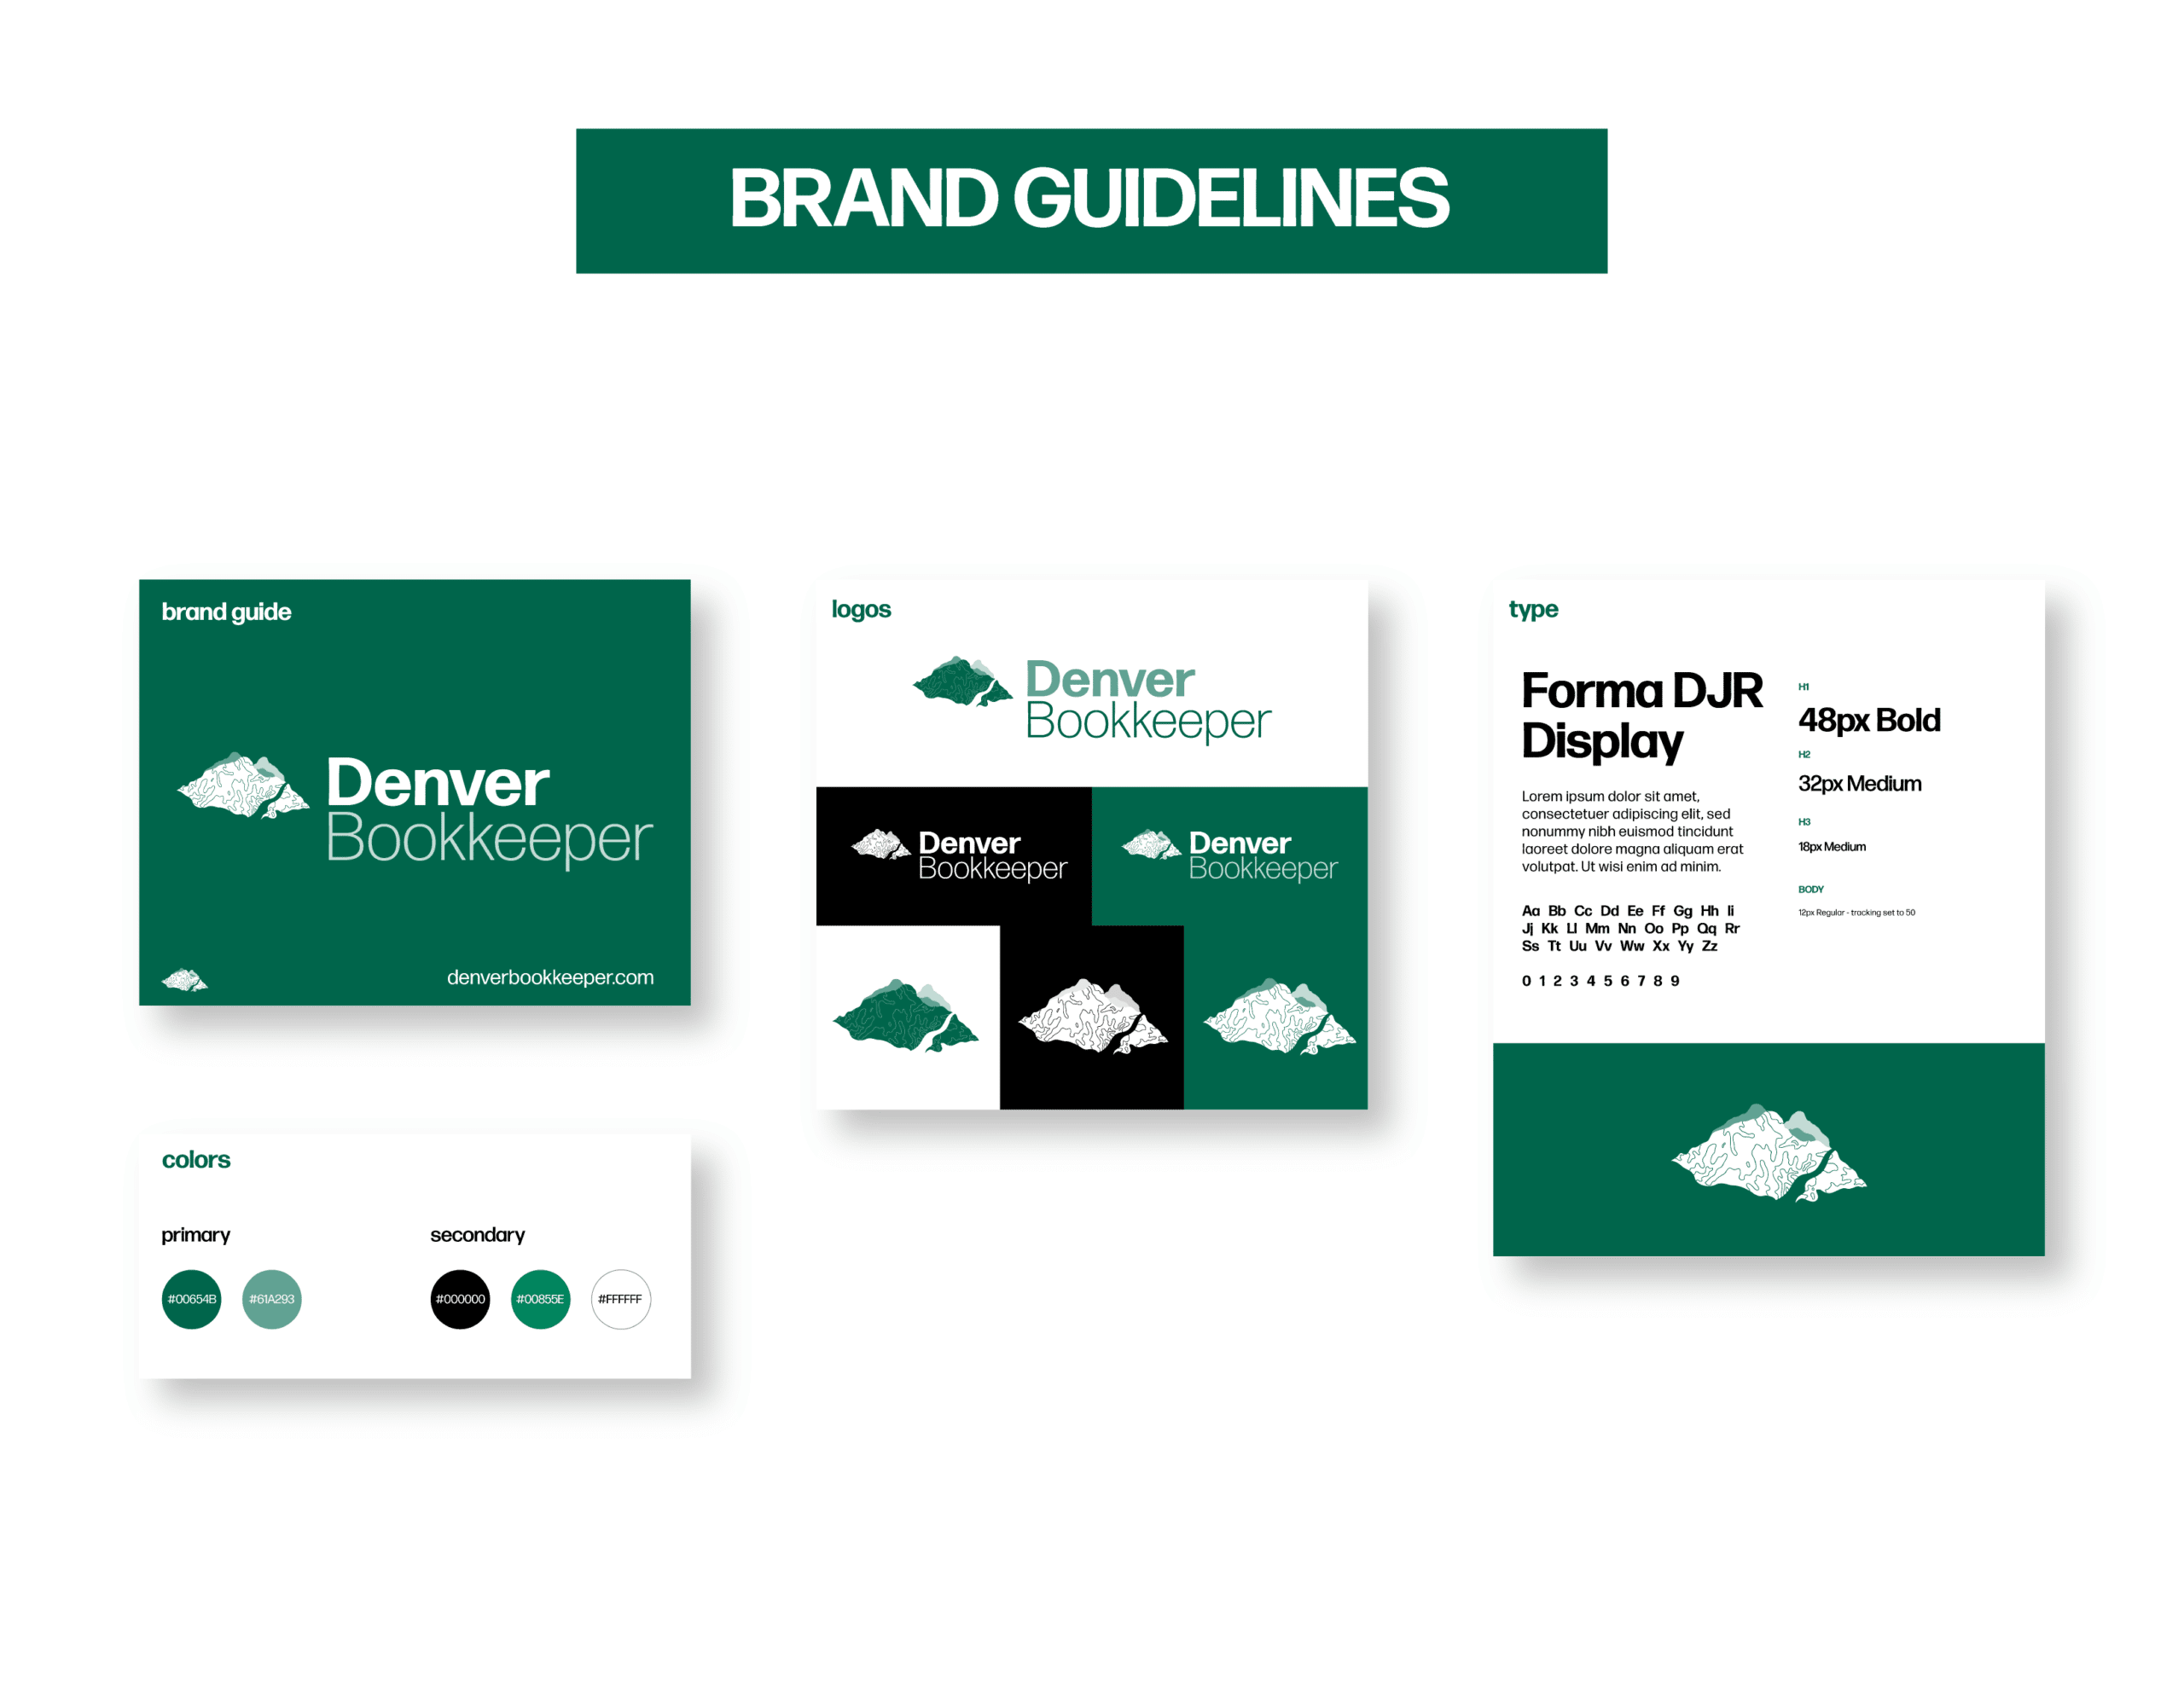 03Denver_Showcase_Branding Guidelines